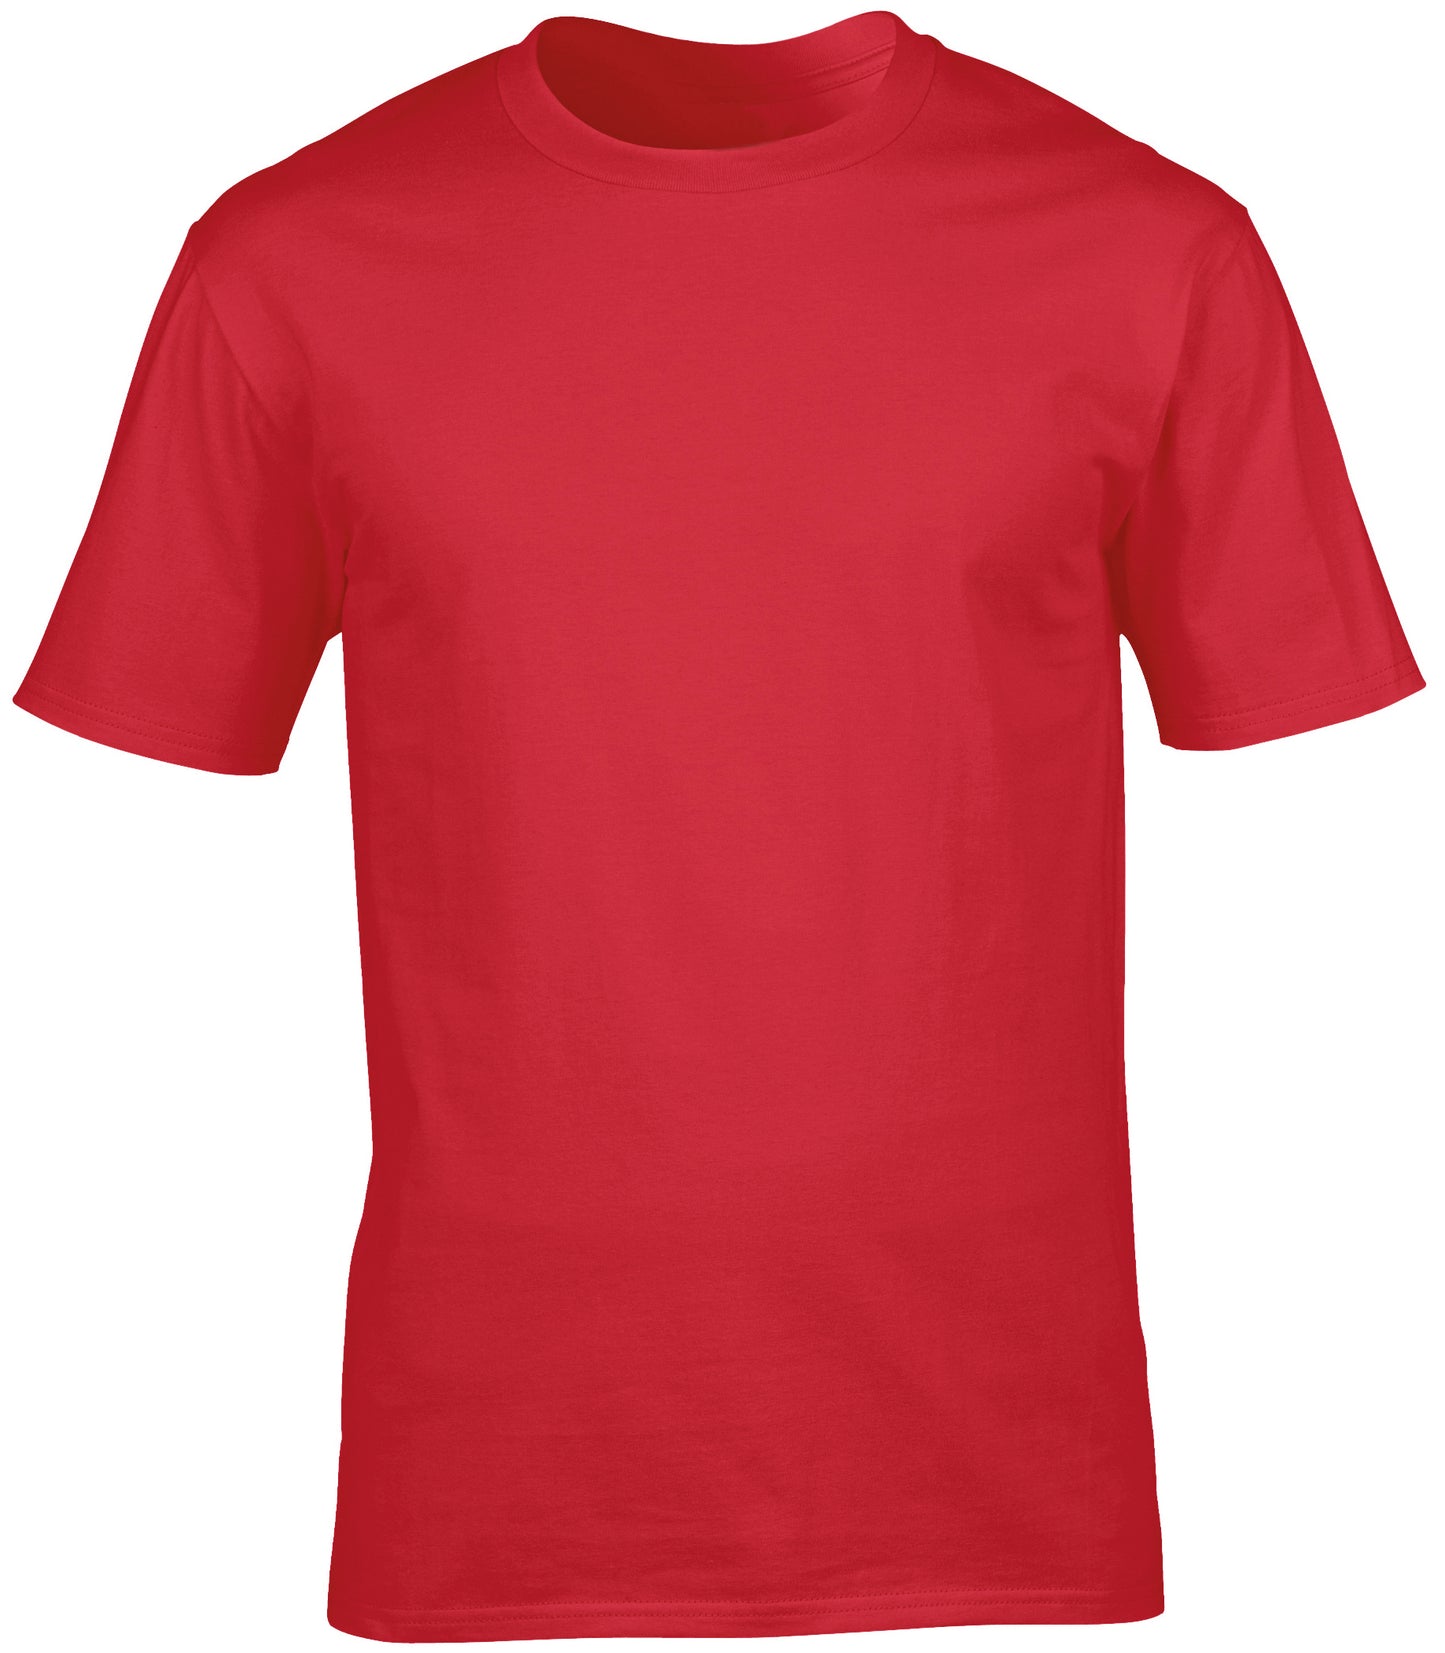 Personalised Image Unisex T-shirt